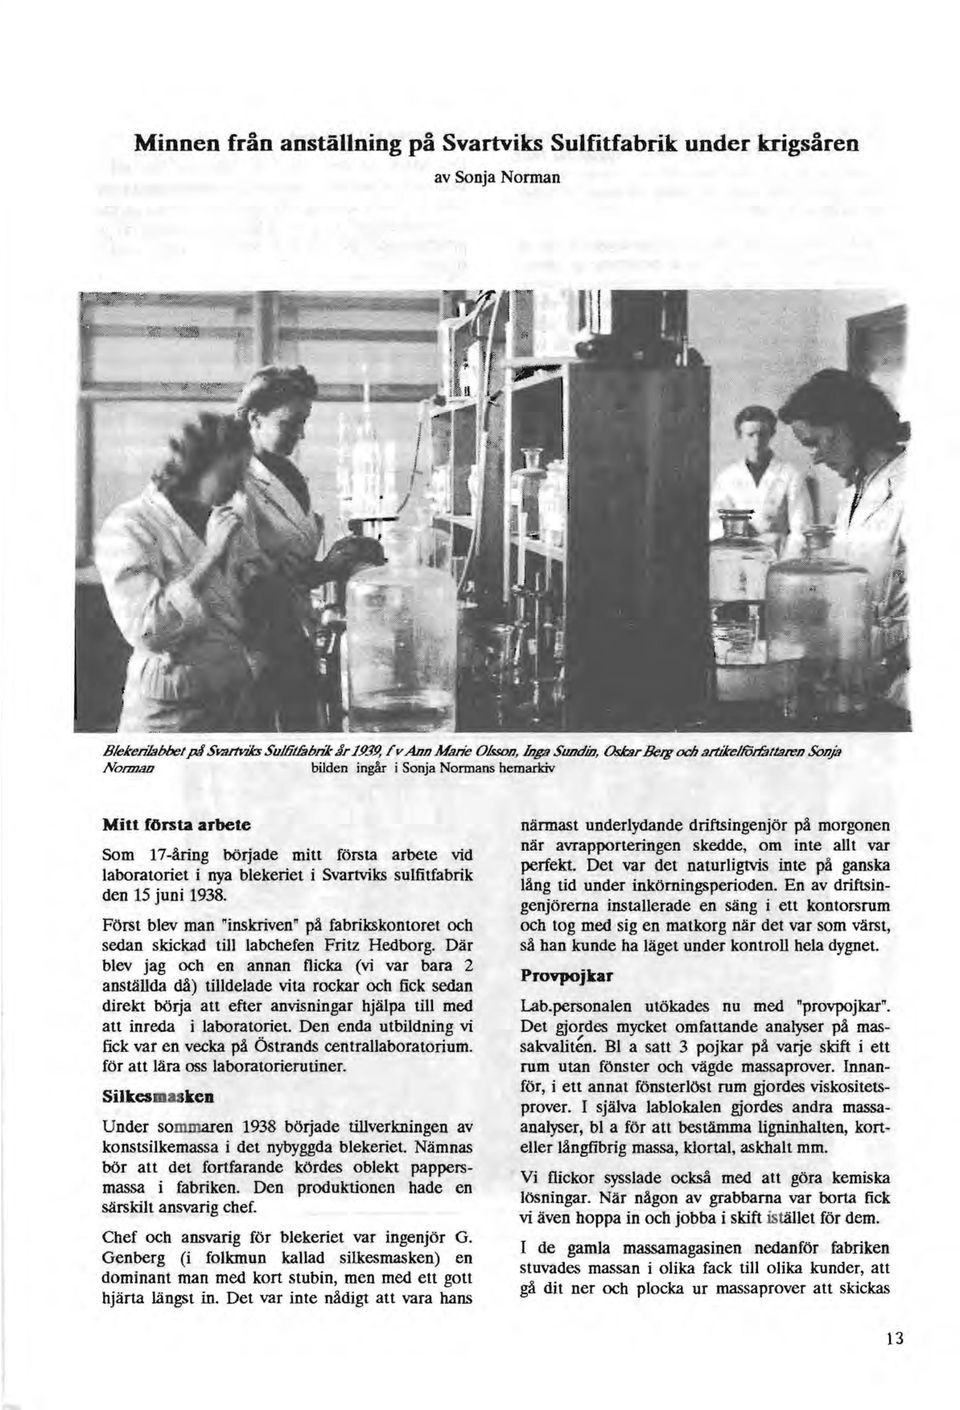 i nya blekeriet i Svartviks sulfitfabrik den 15 juni 1938. Först blev man "inskriven" på fabrikskontoret och sedan skickad till labchefen Fritz Hedborg.